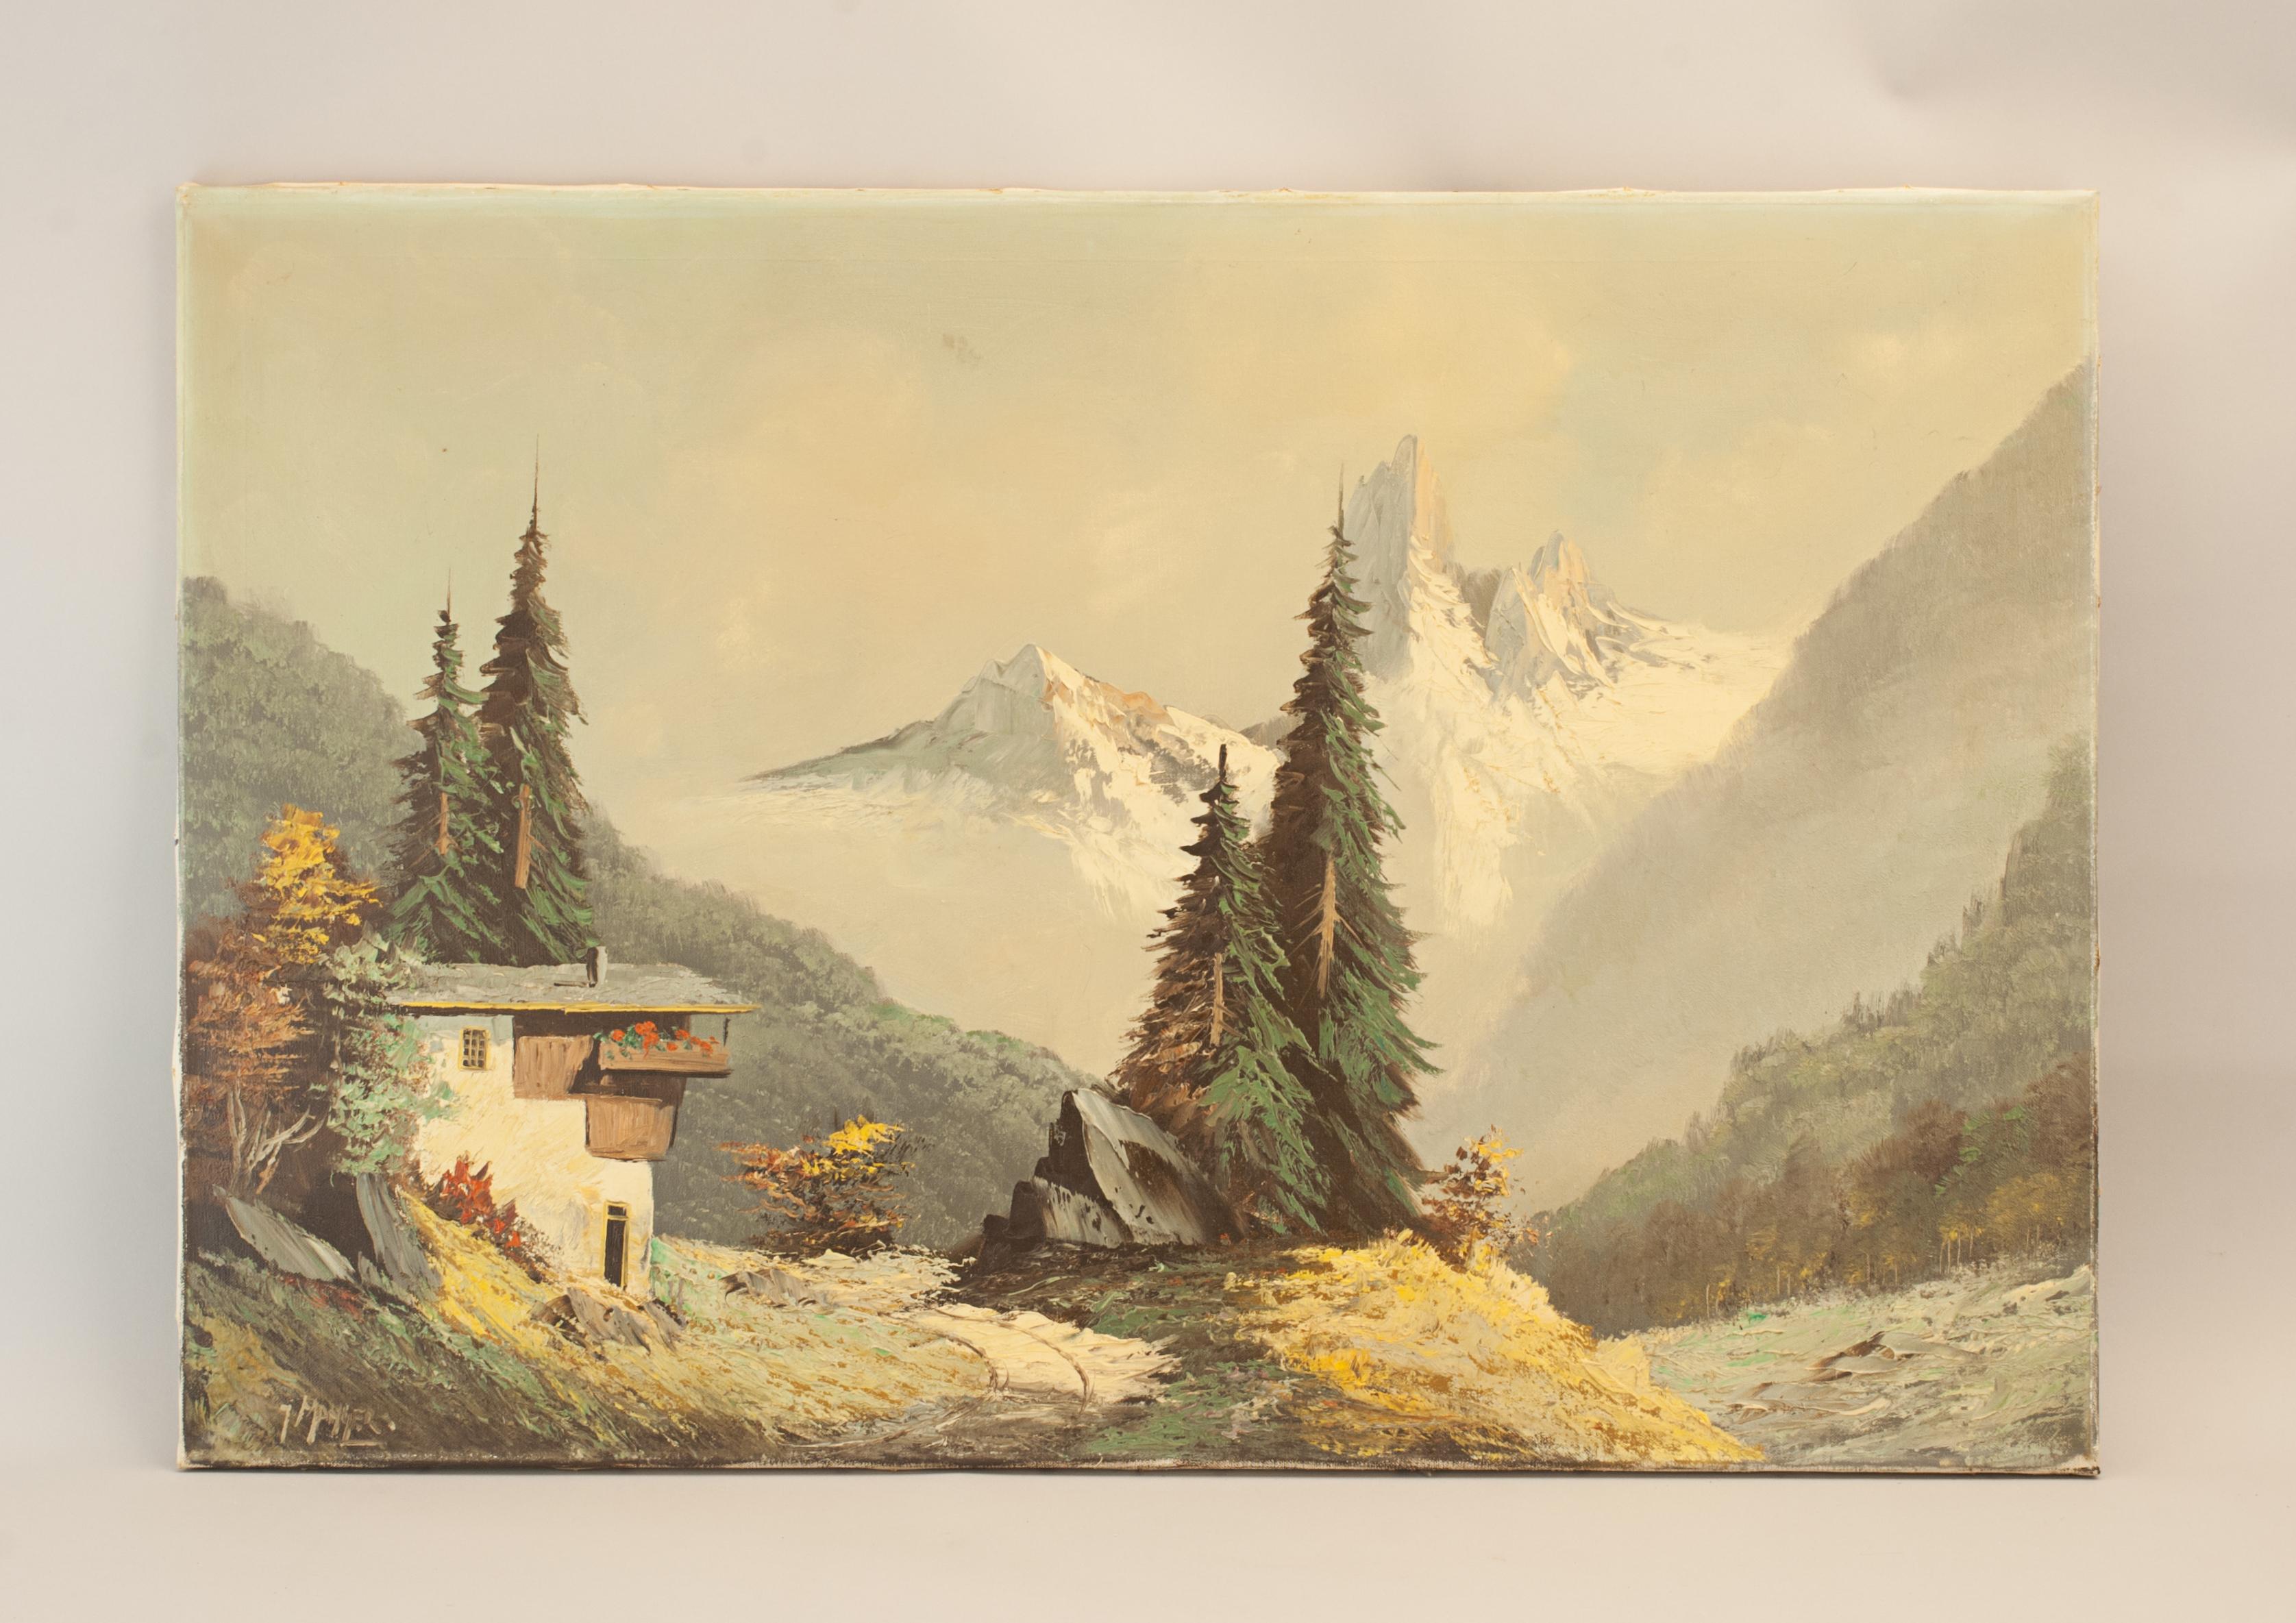 Vintage Huile sur toile, Paysage d'hiver alpin.
Une œuvre d'une finesse exceptionnelle représentant un paysage alpin hivernal avec un chalet et des arbres au premier plan, une grande chaîne de montagnes à l'arrière-plan. Signé en bas à gauche,